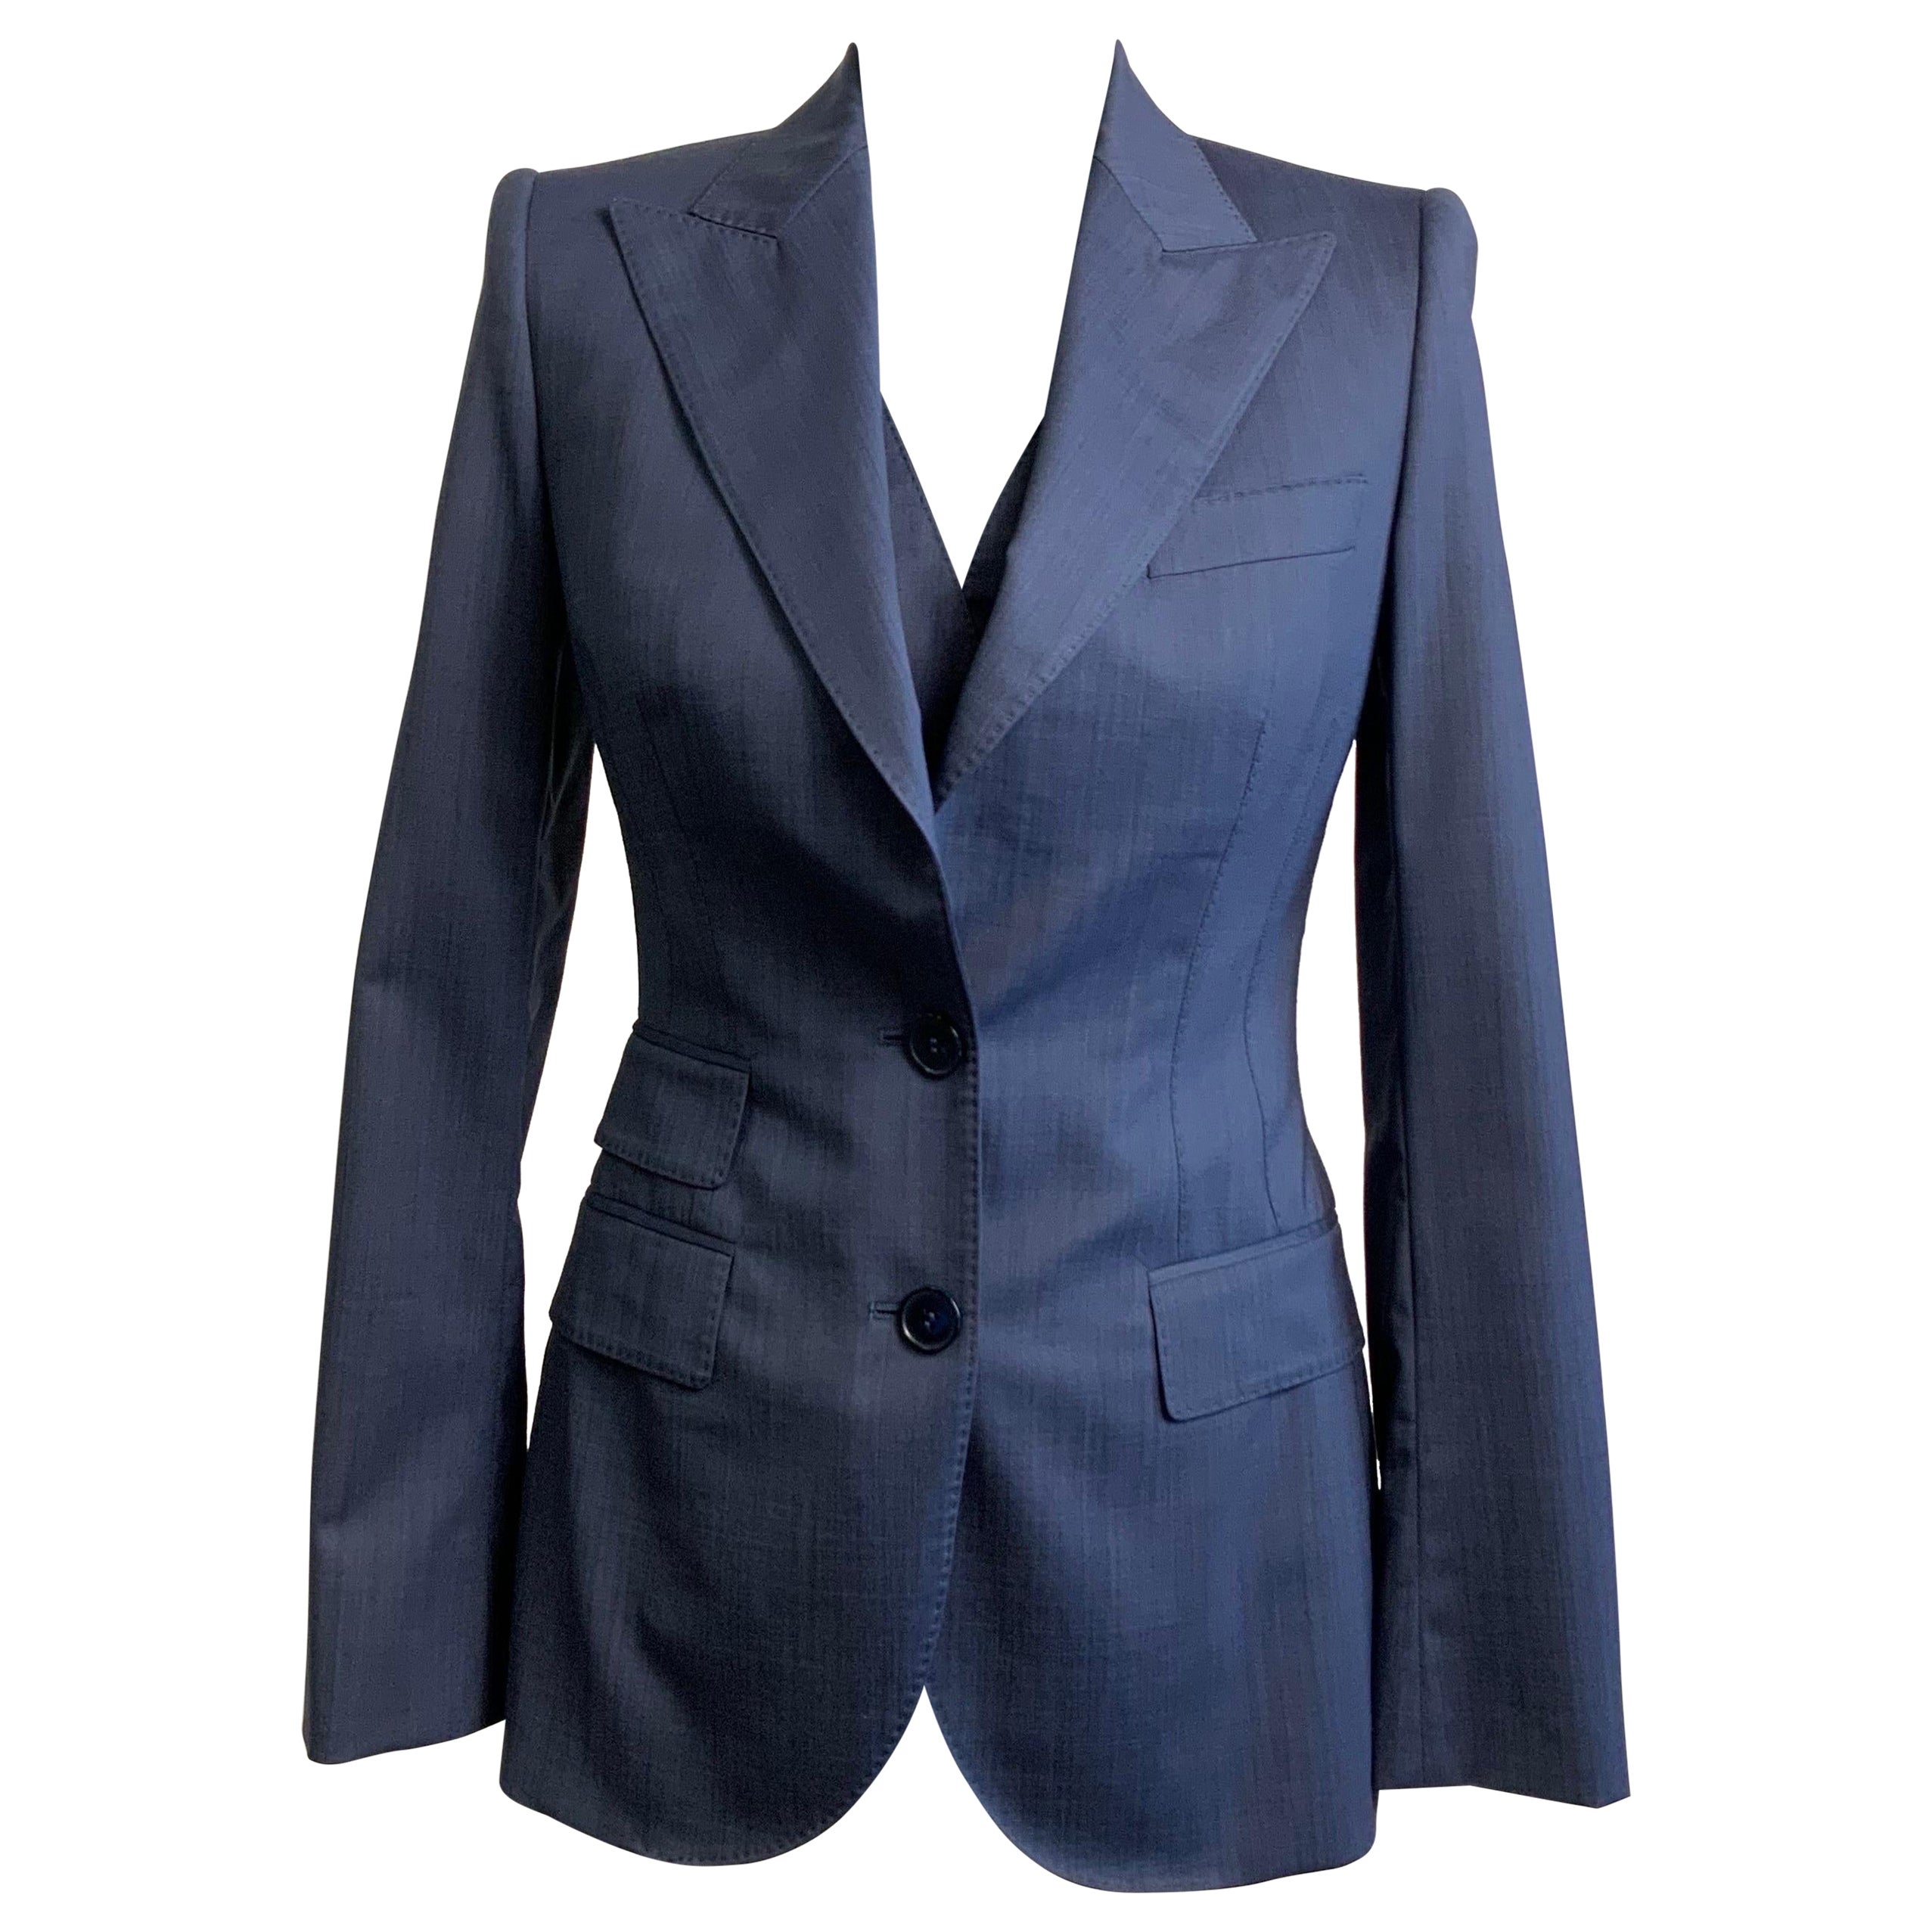 Dolce and Gabbana blue jacket + vest set. For Sale